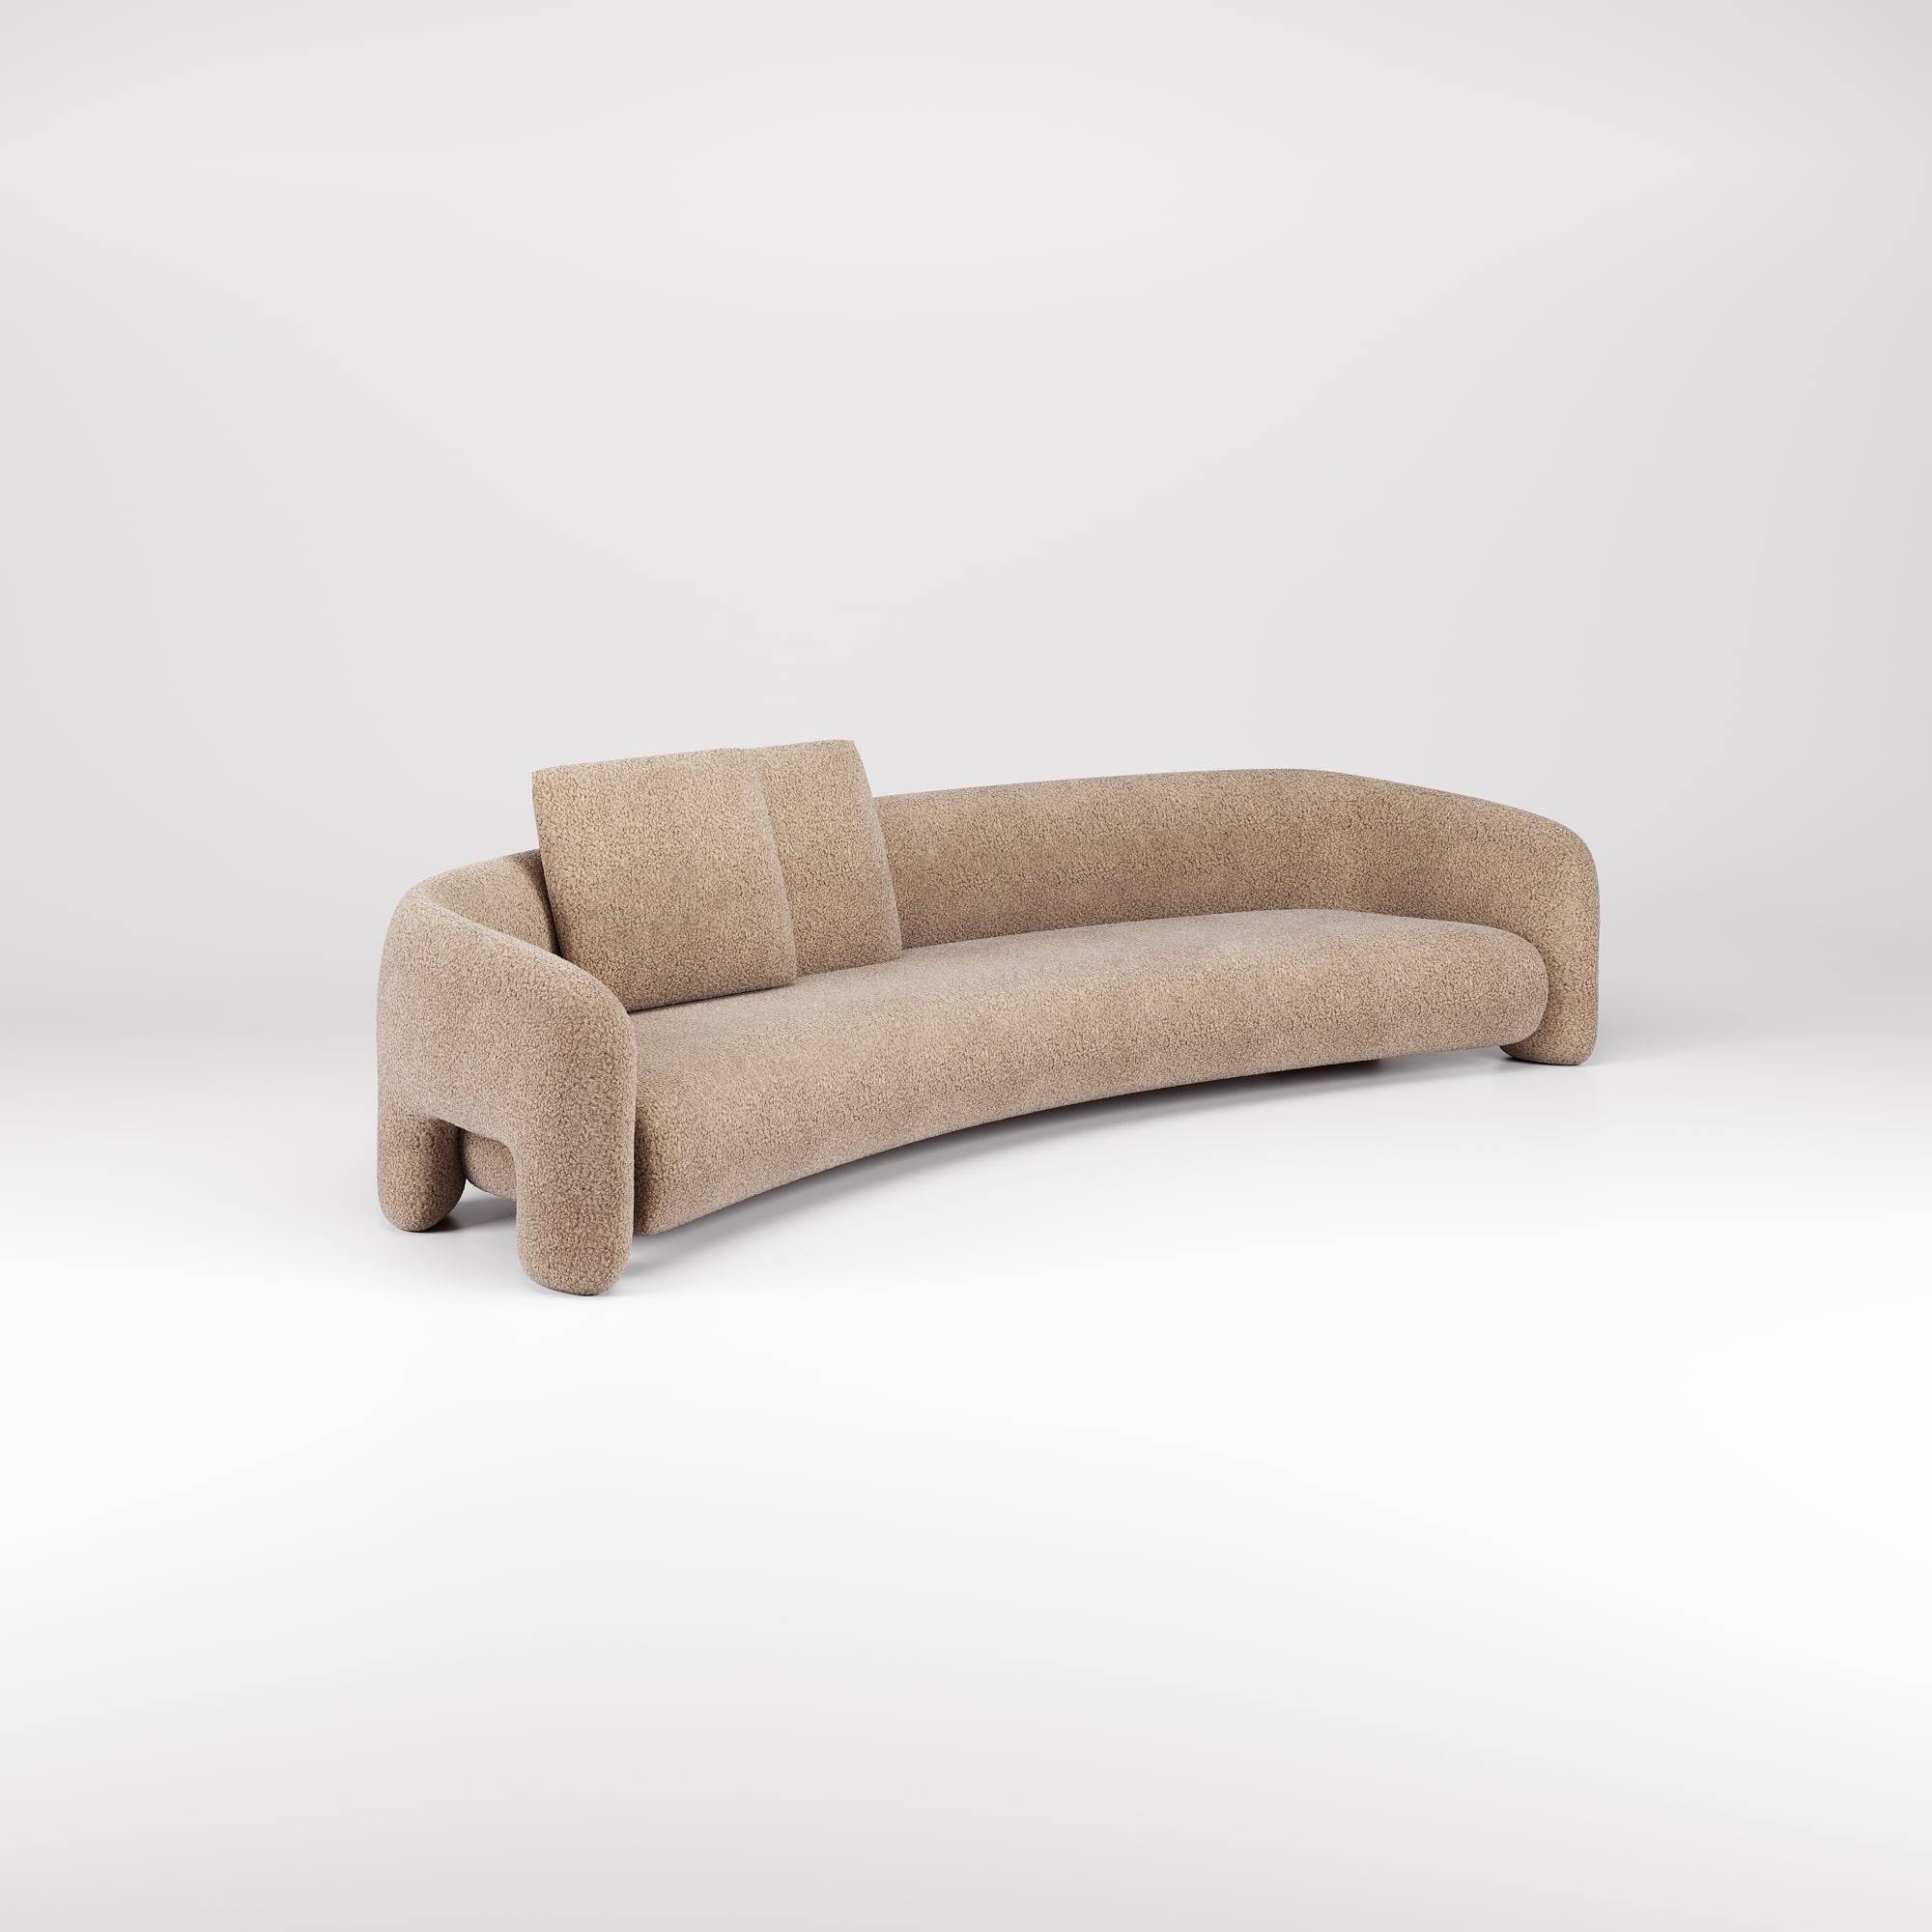 Diese Version des Bold Sofa Curved eröffnet mit ihrem modernen Design neue Dimensionen des Komforts und bietet mehr Platz für ultimative Entspannung.

Die fließenden Linien und organischen Kurven, kombiniert mit den offenen Armen, verstärken das